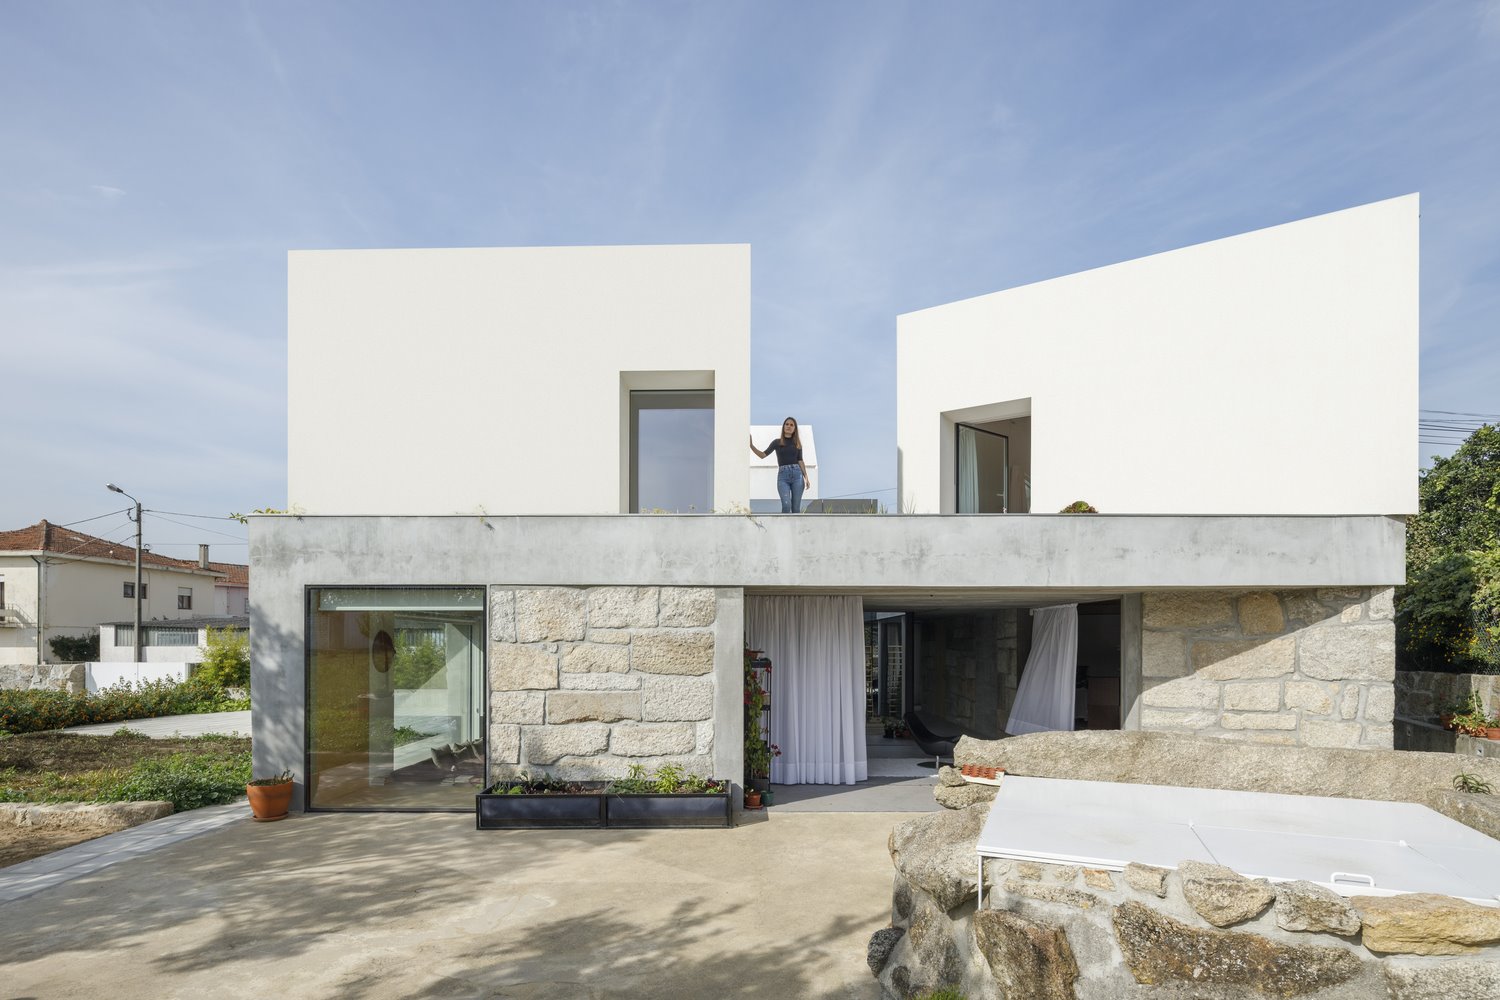 Casa en portugal de hormigon fachada blanca